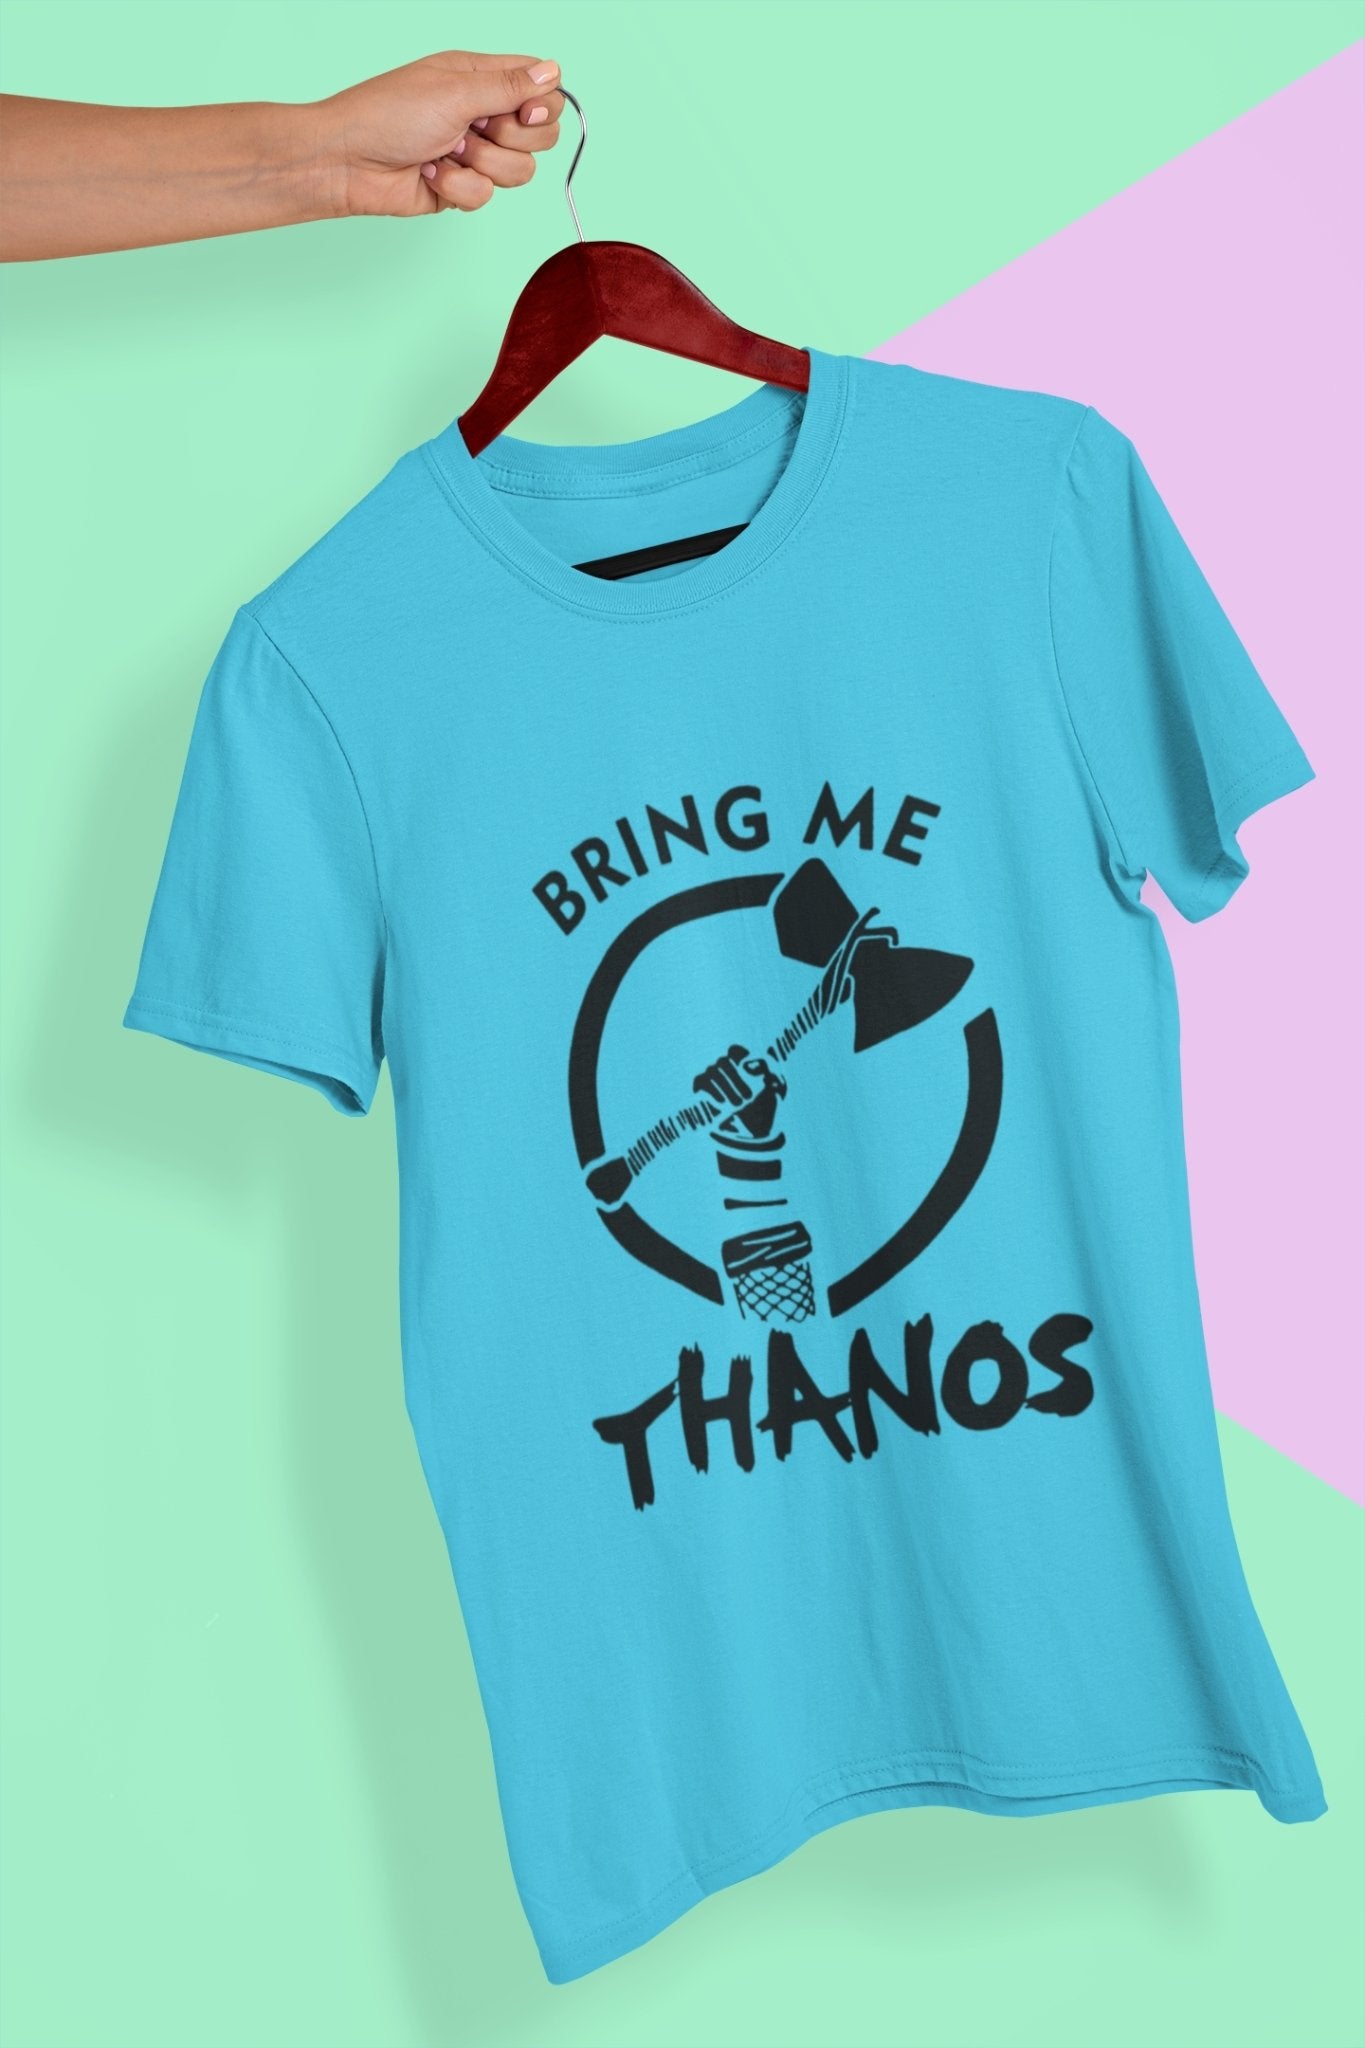 Bring Me Thanos Mens Half Sleeves T-shirt- FunkyTeesClub - Funky Tees Club